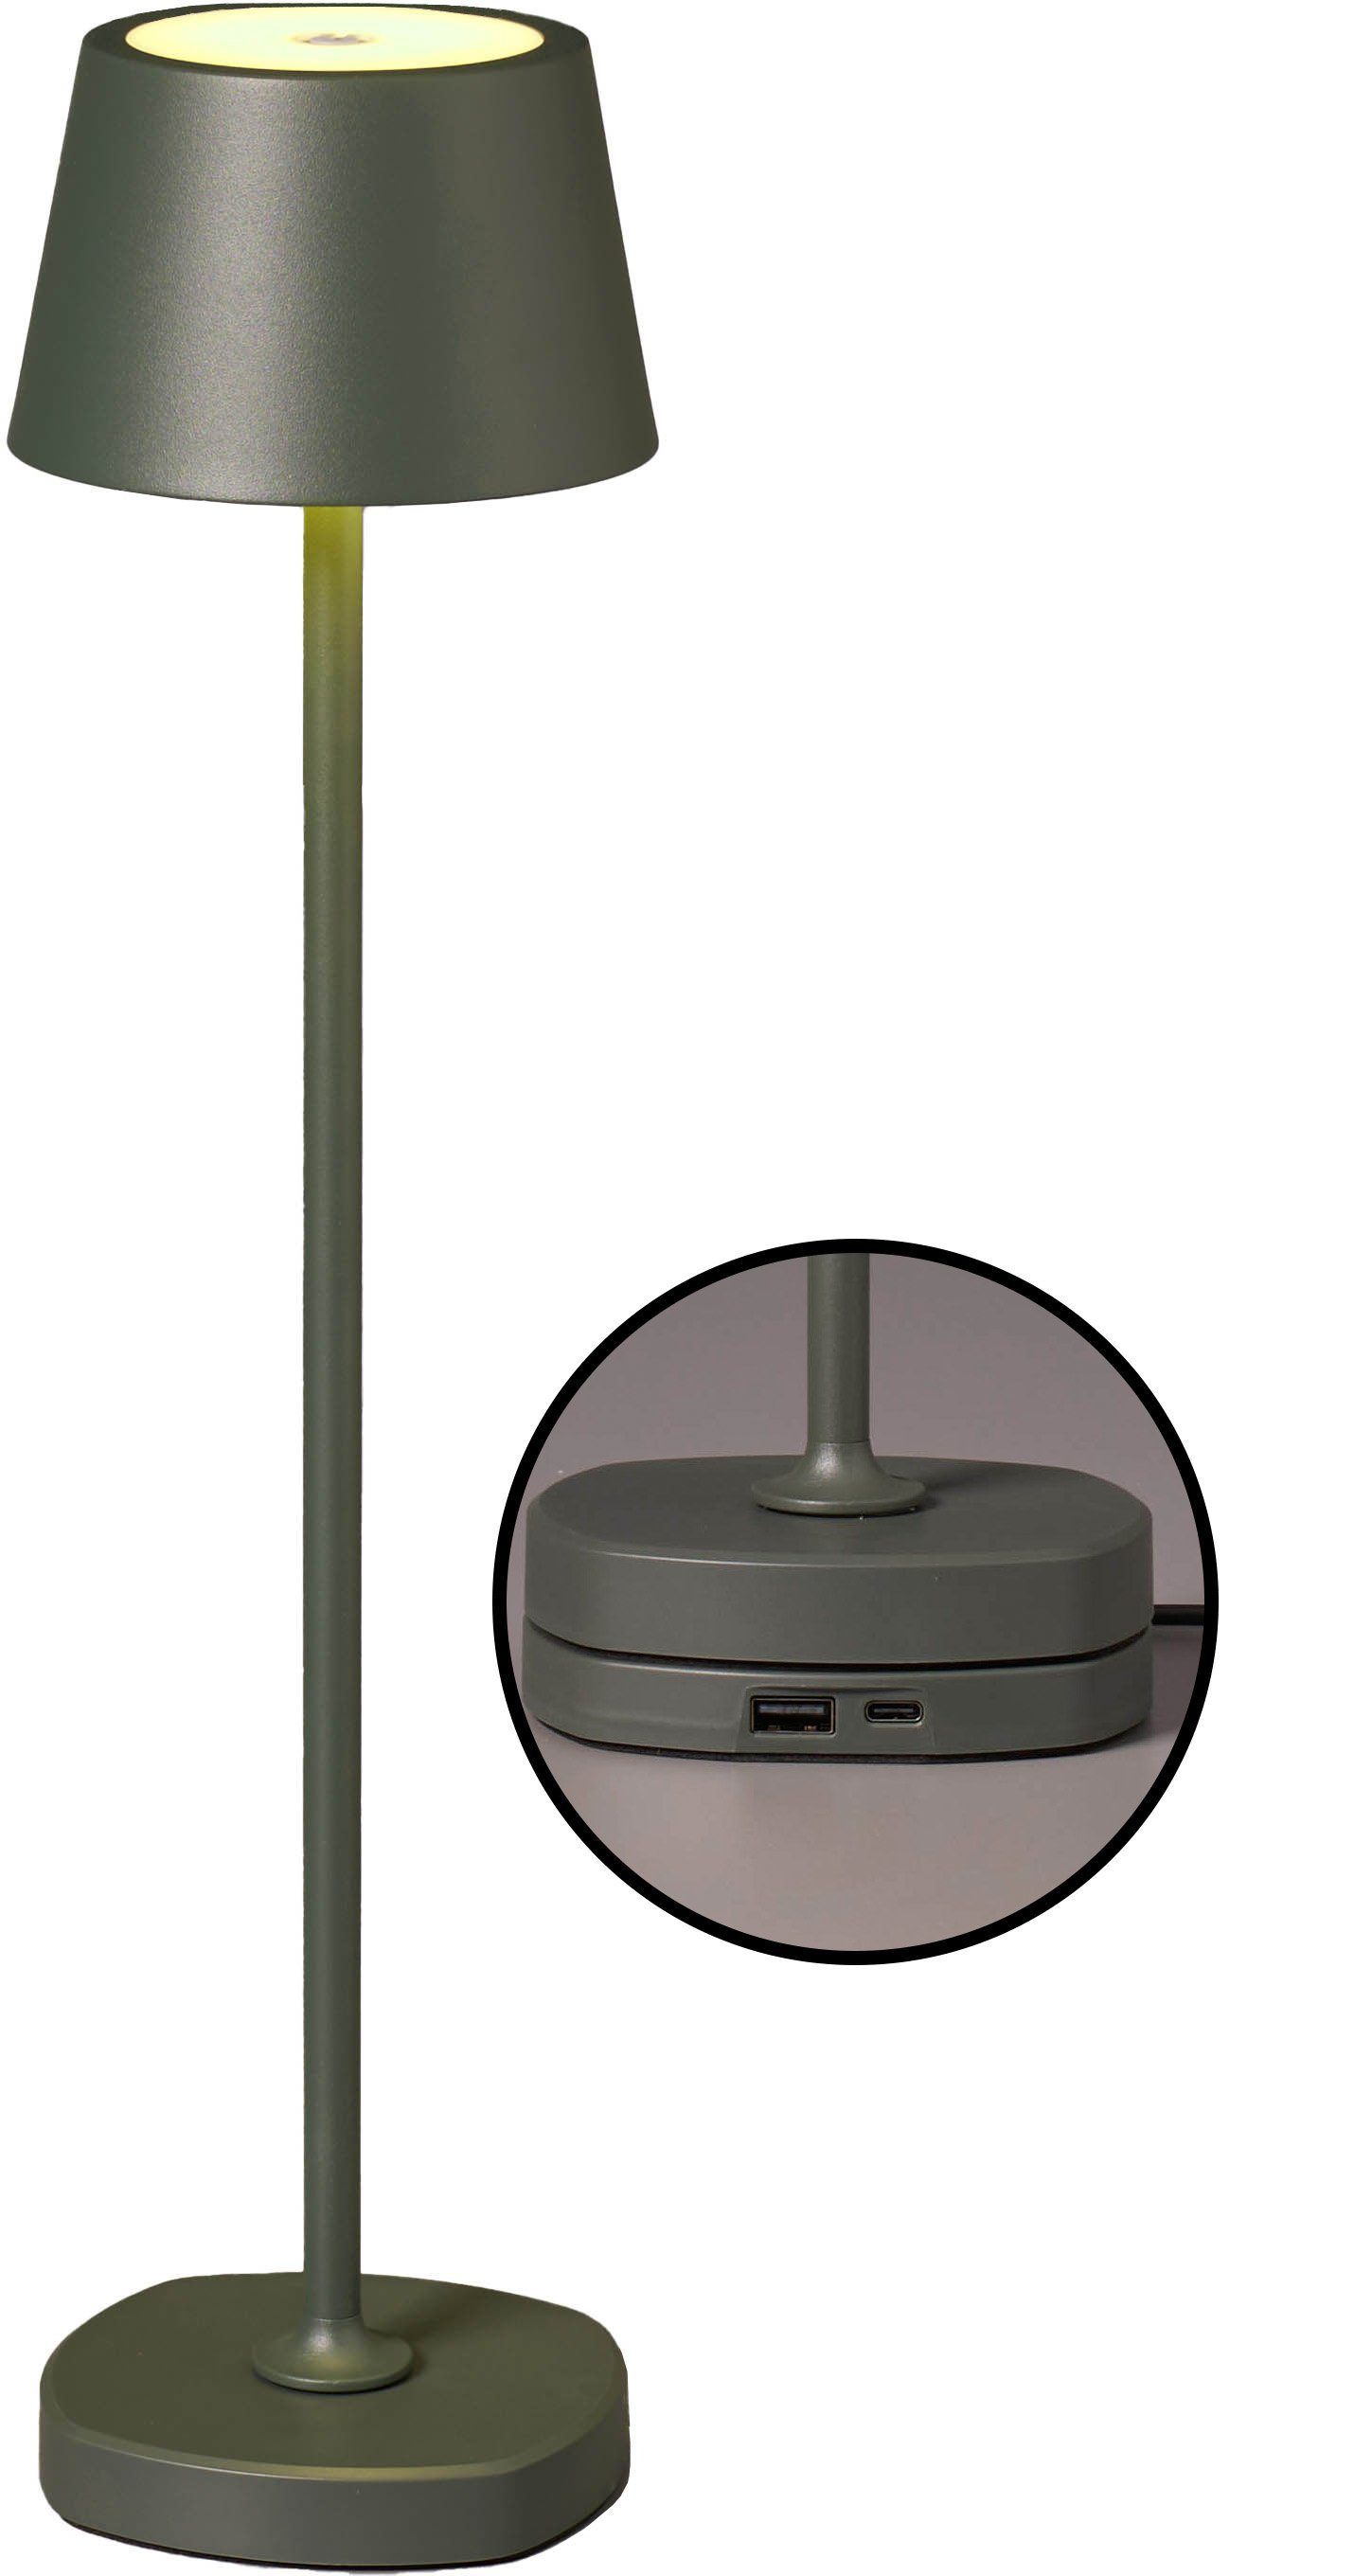 Northpoint Tischleuchte Tischlampe dimmbar mit hoch max. Akku warmweiße LED 45cm Ladestation olivegrün